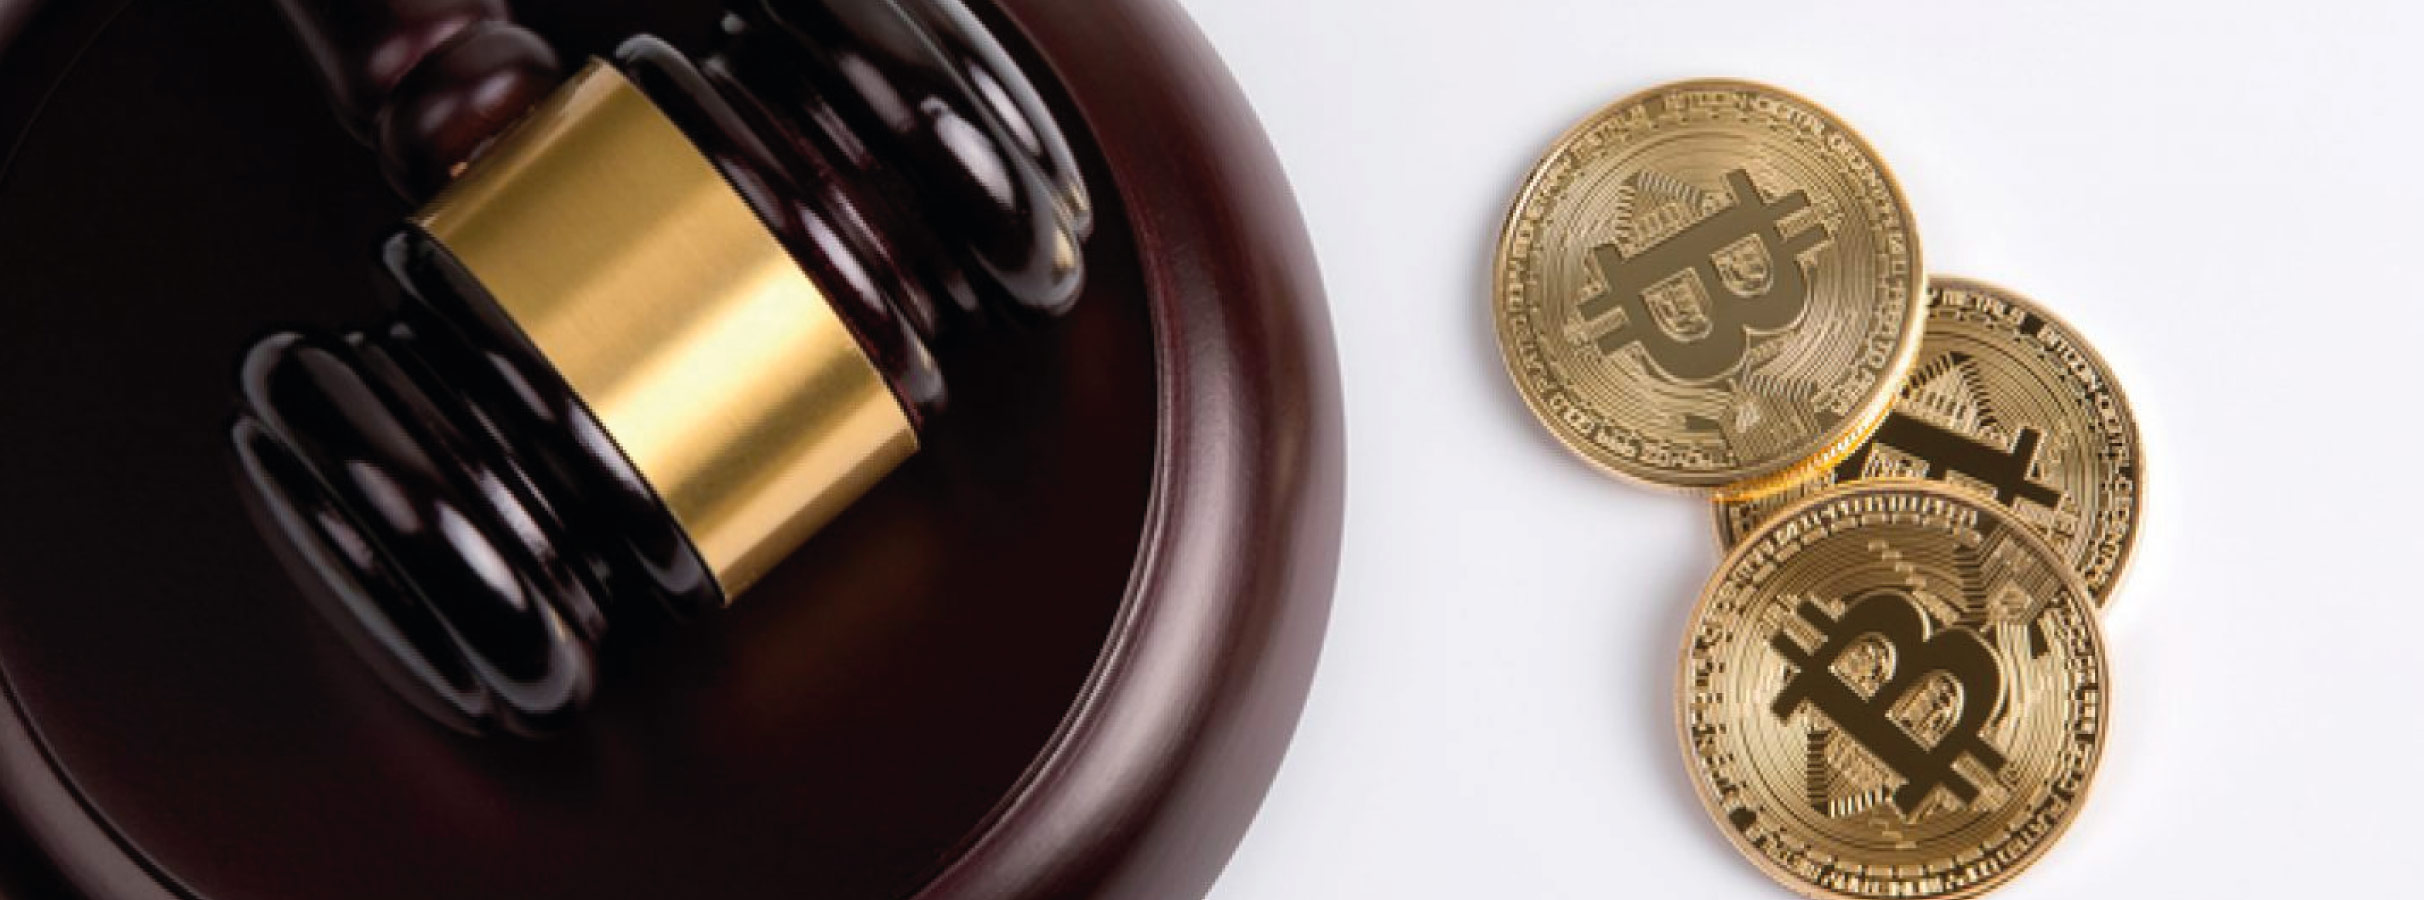 Valor jurídico do Bitcoin